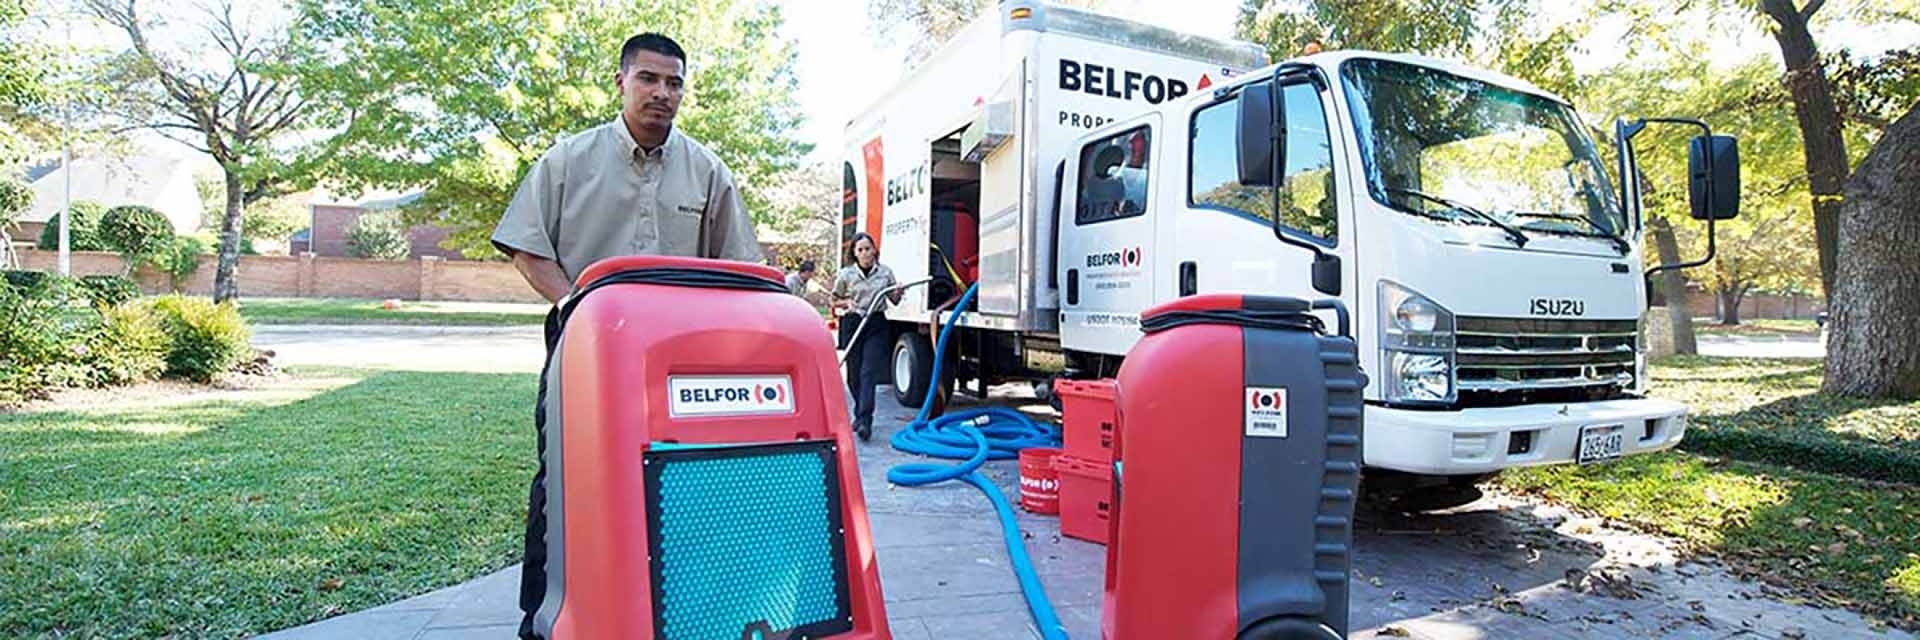 belfor-residential-water-team